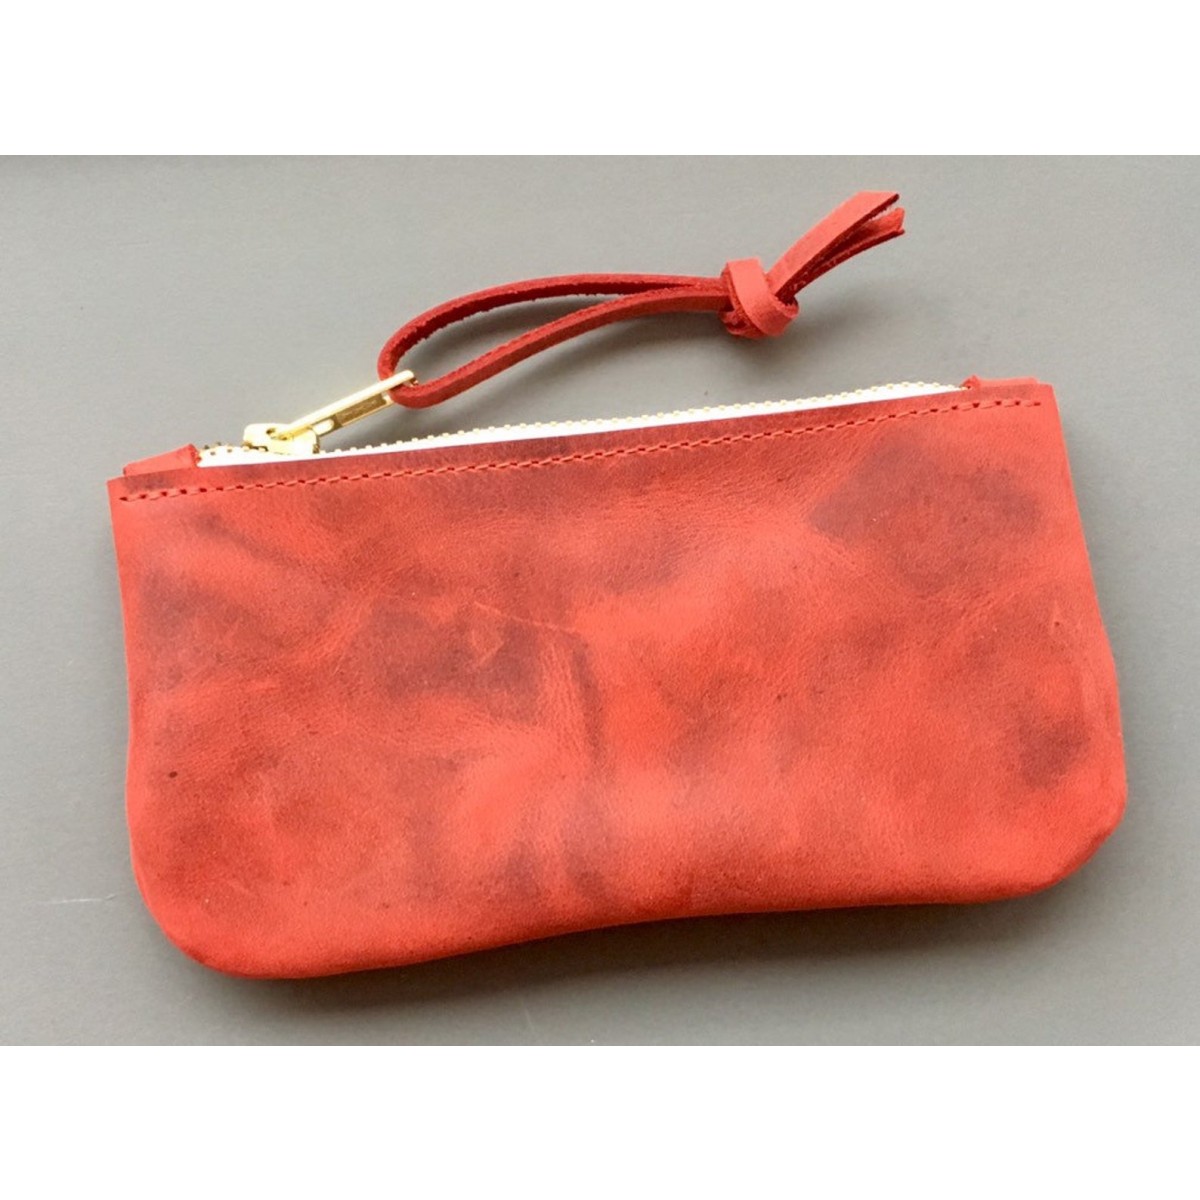 BSaite / Kleines Leder Portemonnaie / kleine Leder Clutch / kleine rote Leder Geldbörse / Reißverschluss Tasche / Geschenk für Freundin